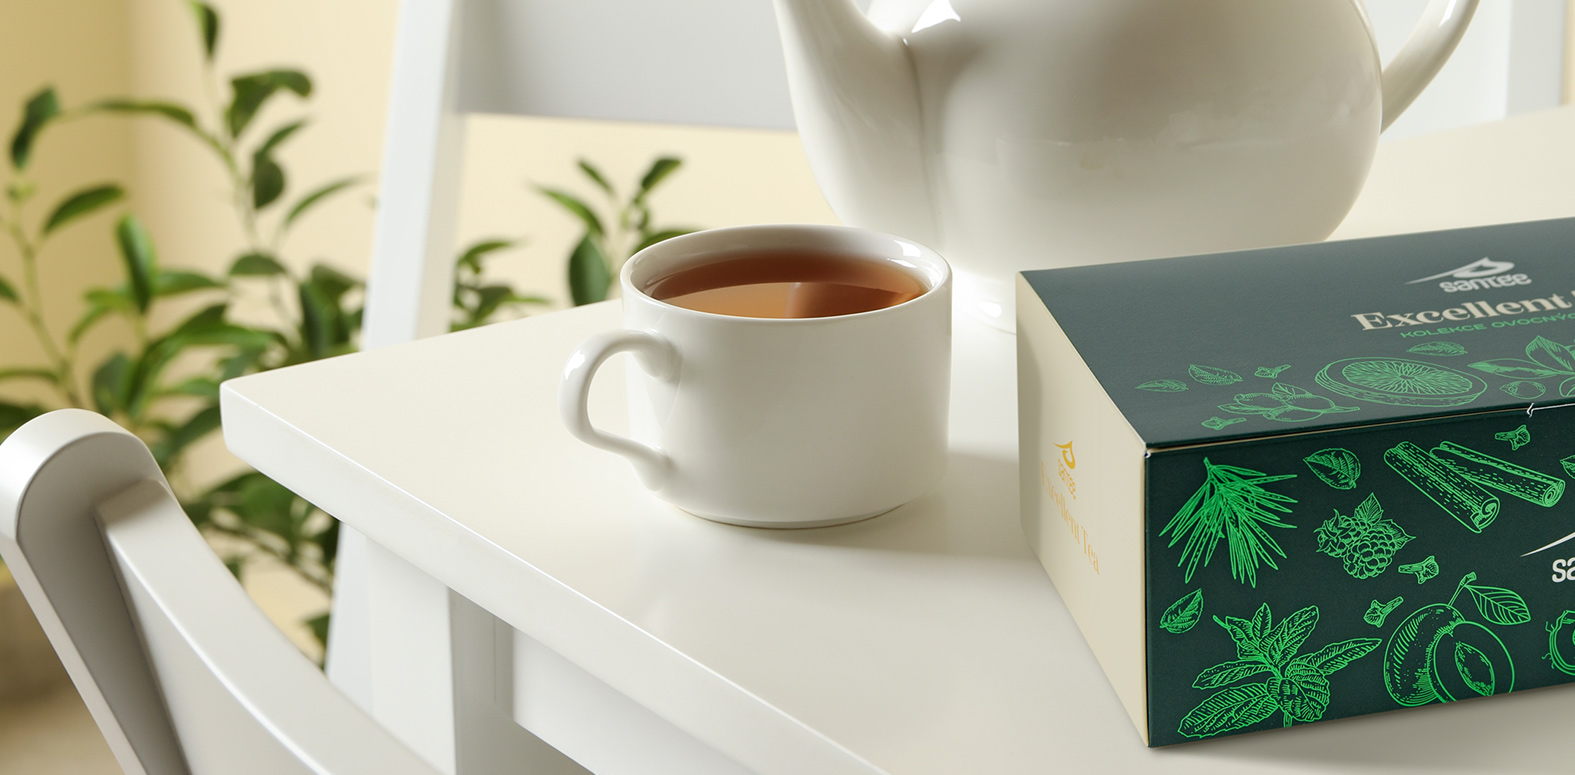 Návrh obalu dárkové kolekce čajů na stole se šálkem v reálném prostředí.